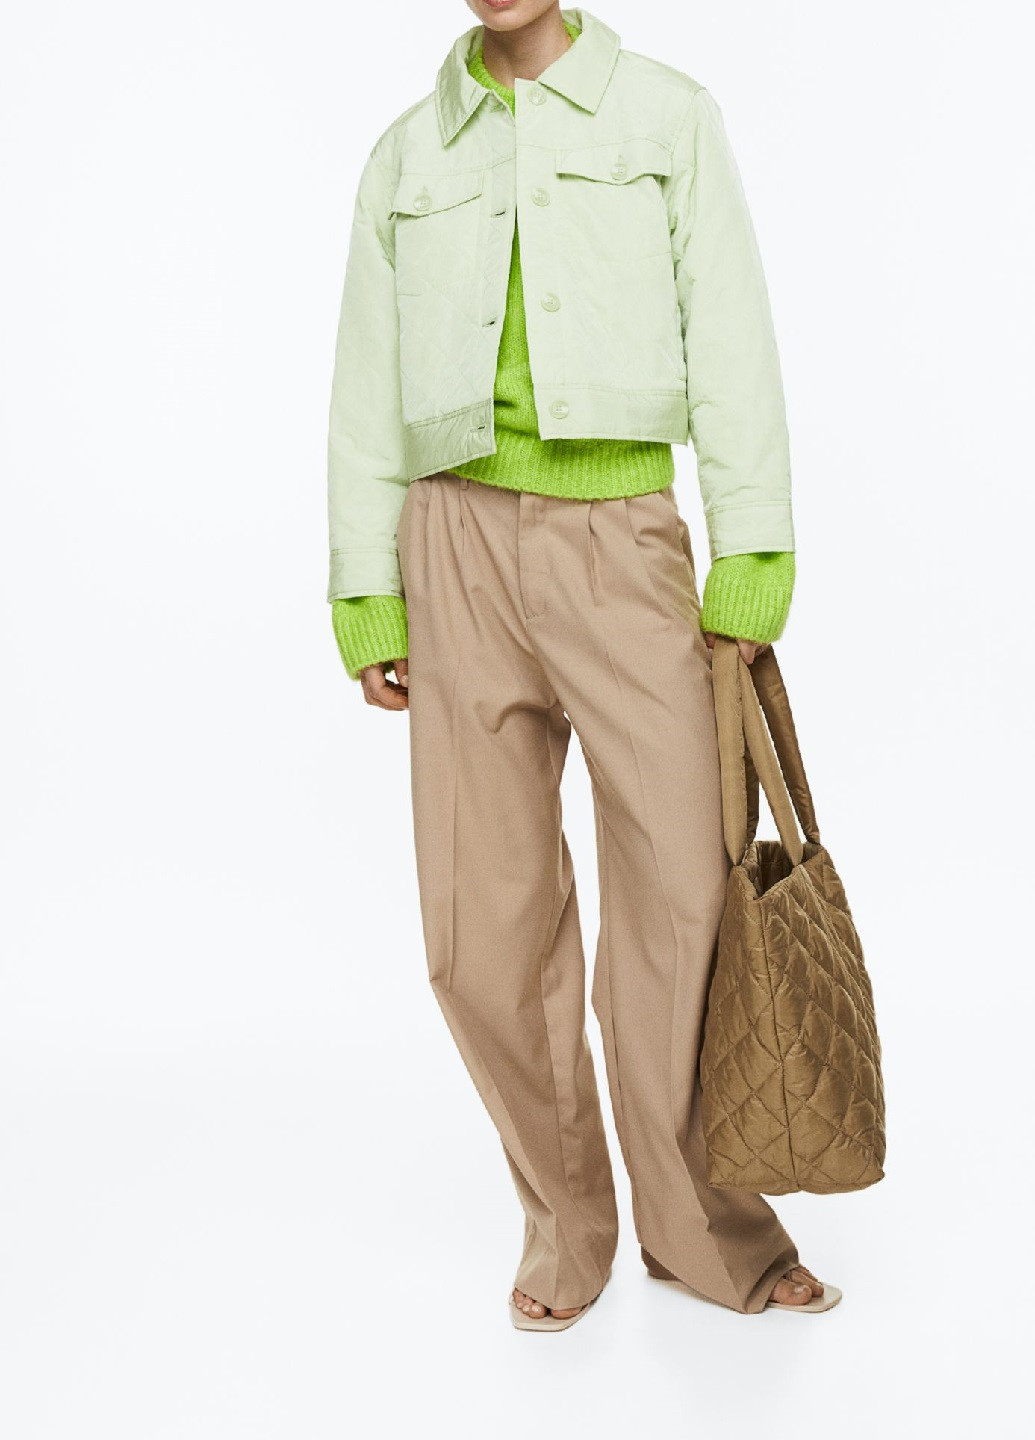 Светло-зеленая демисезонная куртка H&M